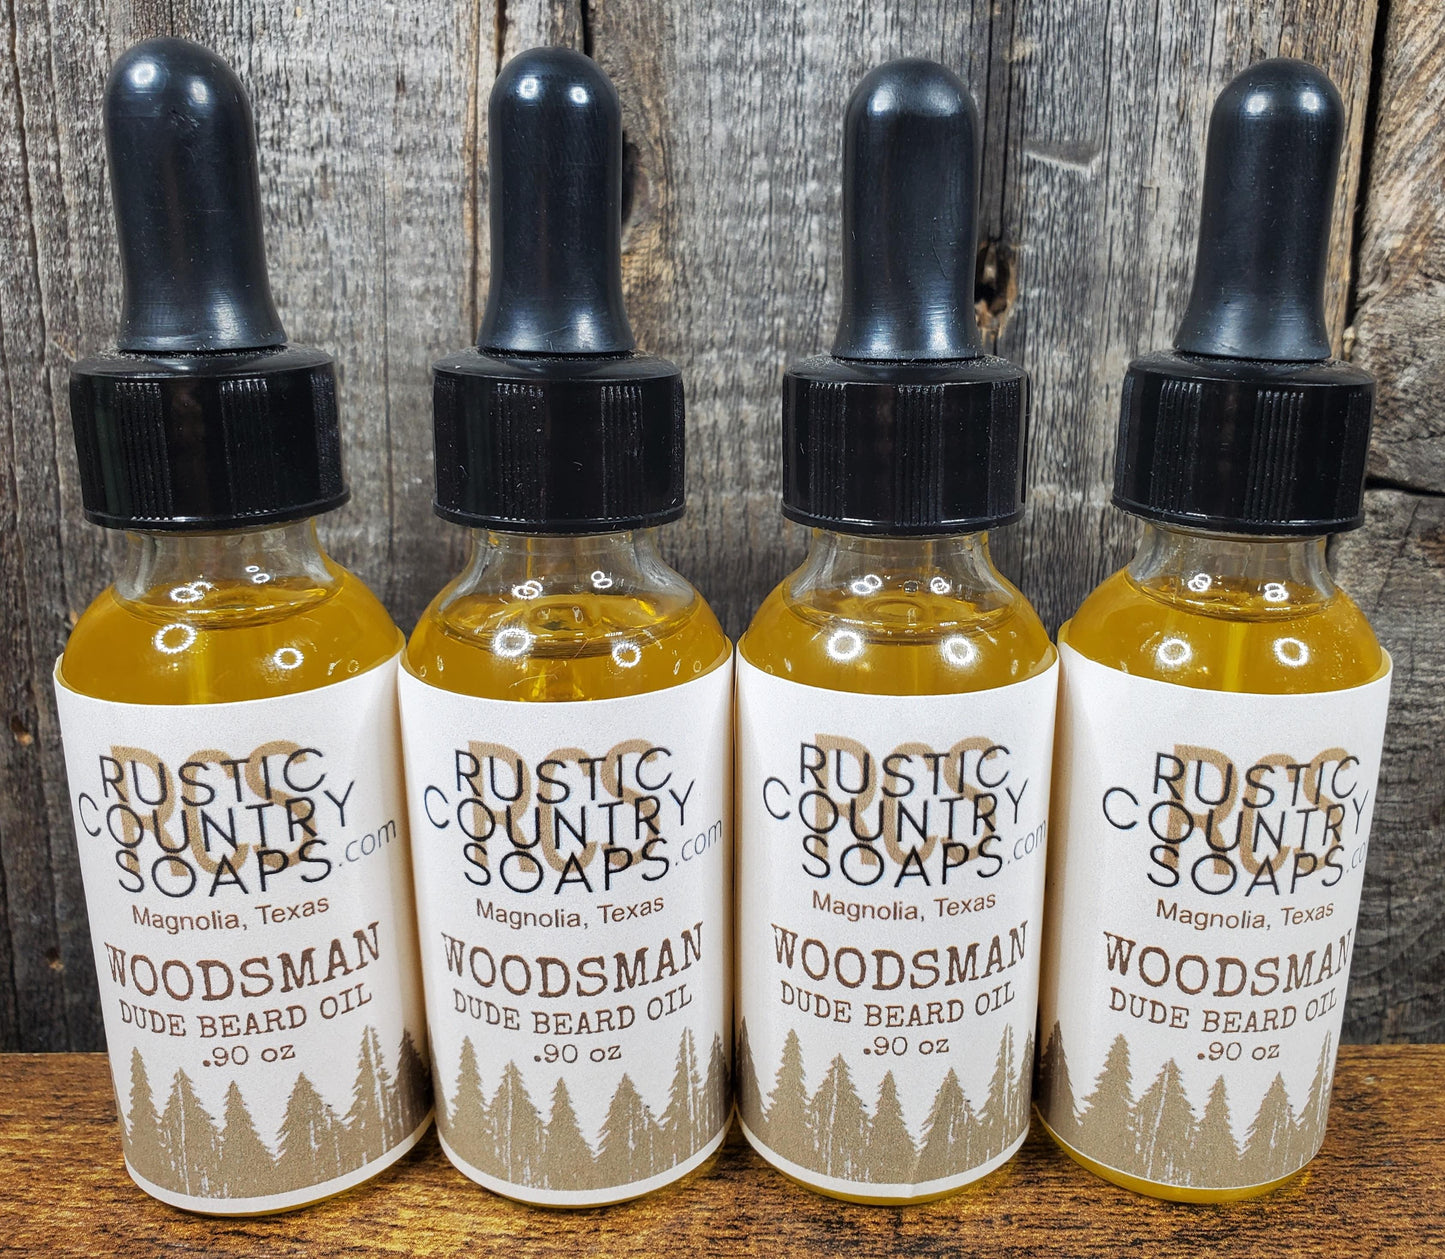 Woodsman – “Dude” Beard Oil - Rustic Country Soaps & More